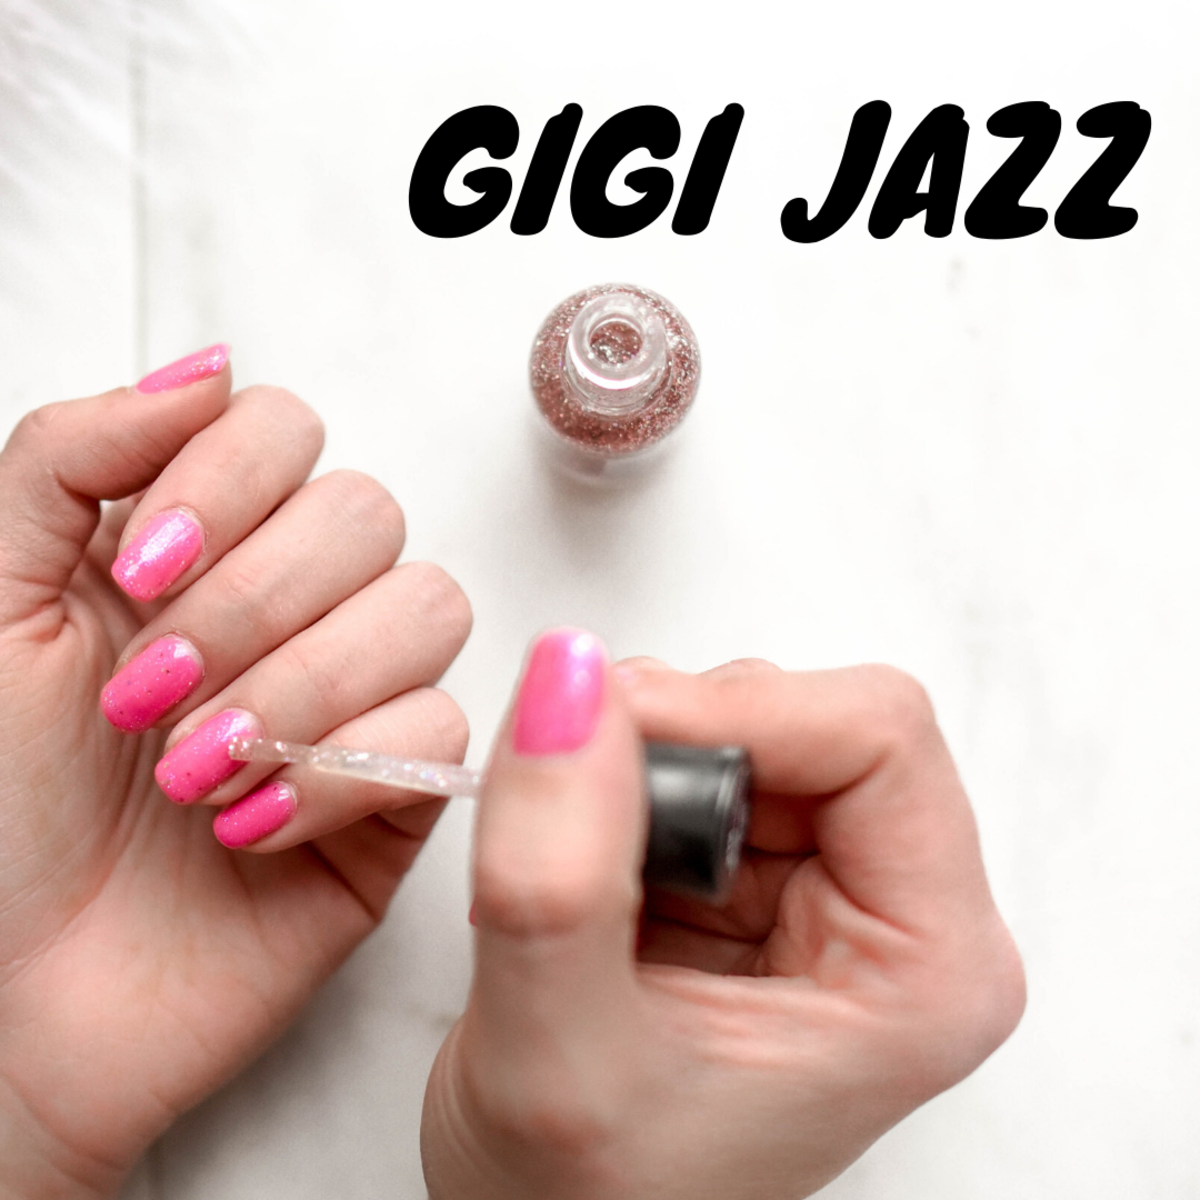 Gigi Jazz